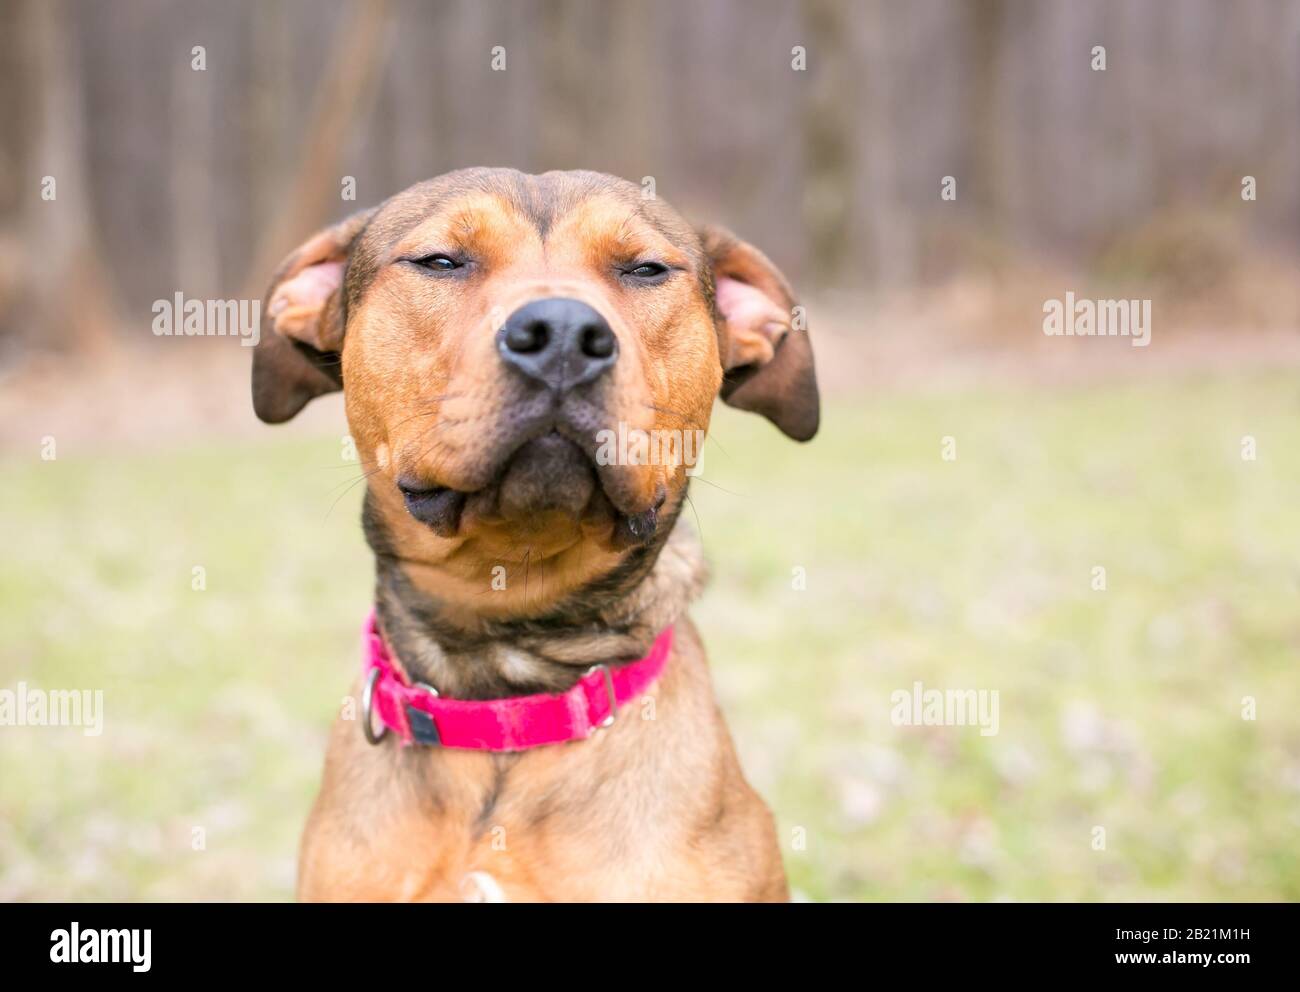 Un pastore x Terrier mista razza cane con i suoi occhi chiusi in un'espressione annoiato o assonnato Foto Stock